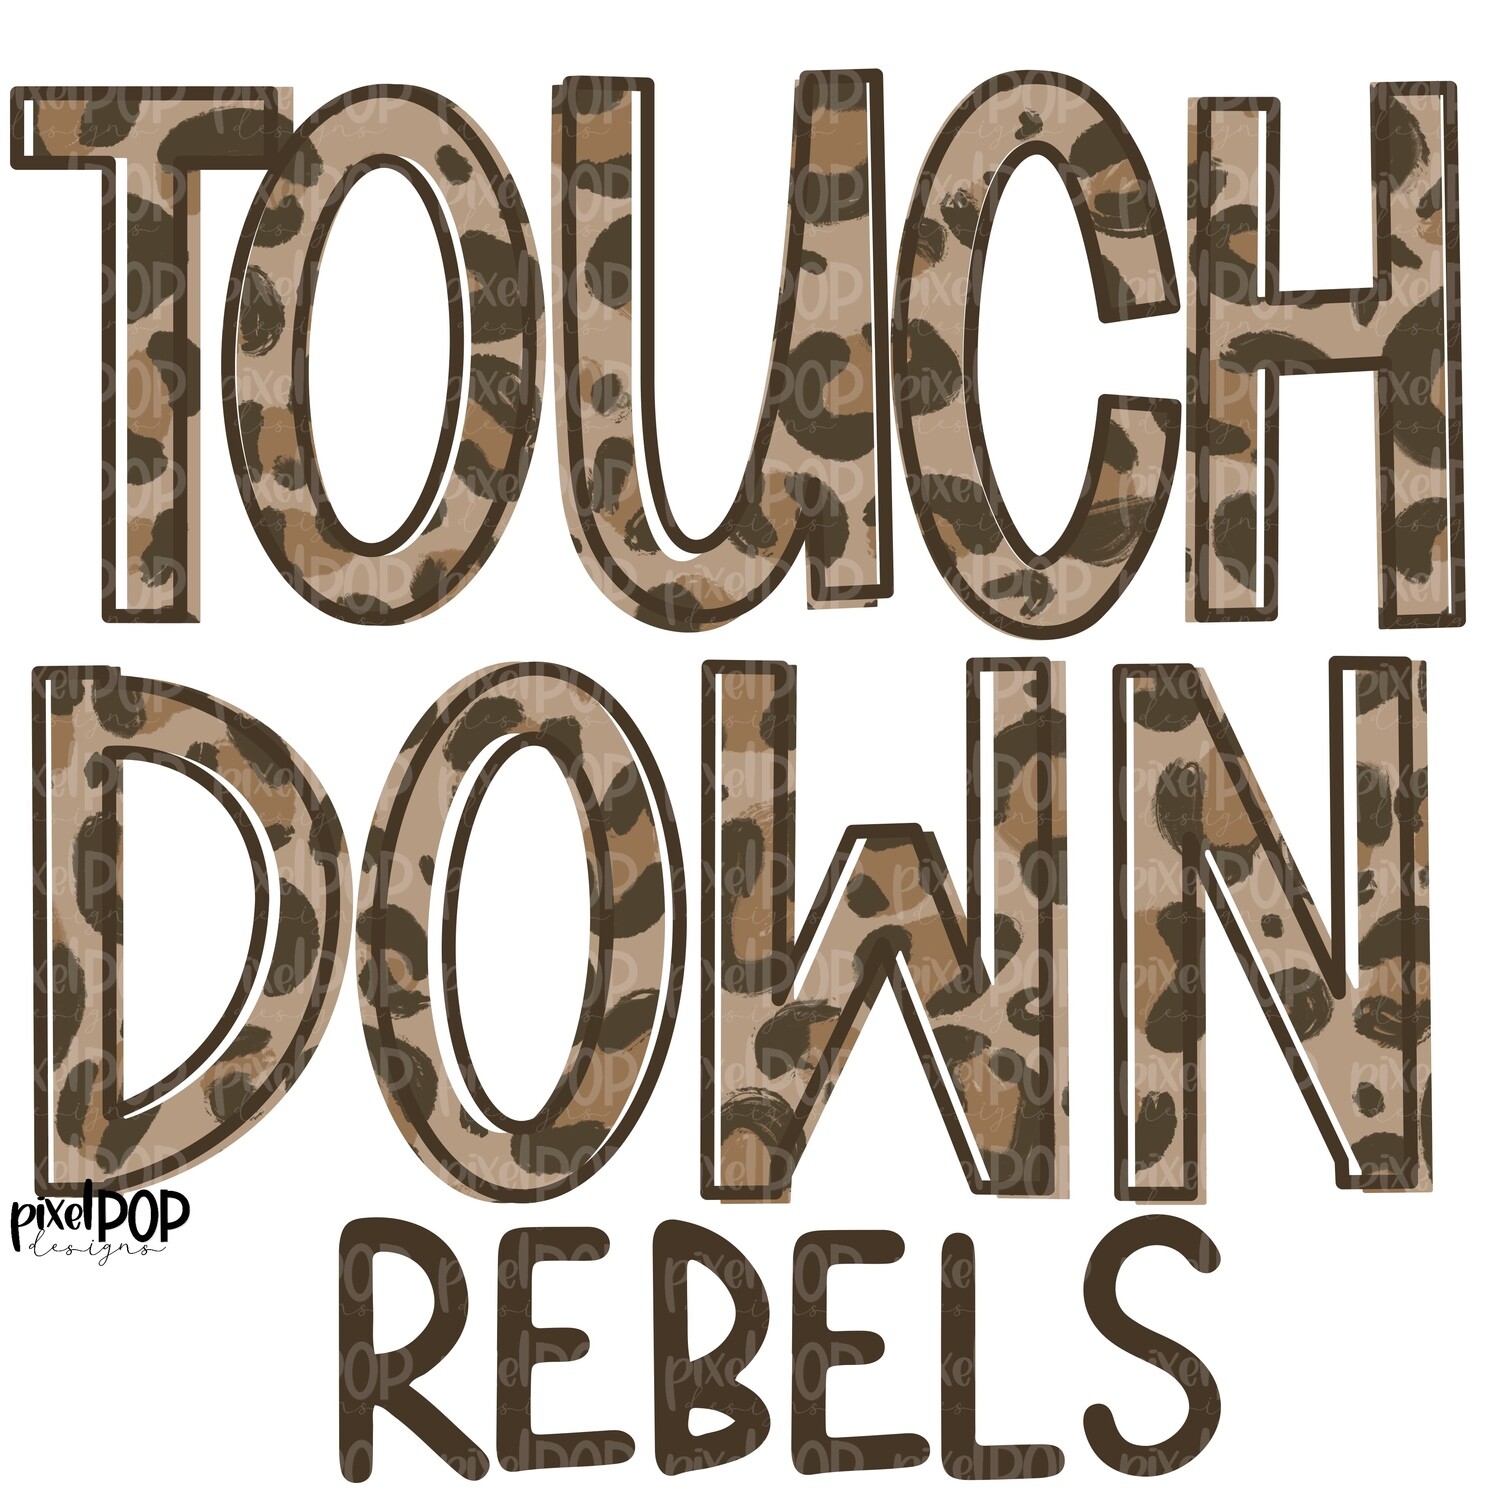 Rebels Touchdown Leopard Print Mascot PNG | Rebels Sublimation Design | Team Spirit Design | Rebels Clip Art | Digital Download | Printable Artwork | Sports Art